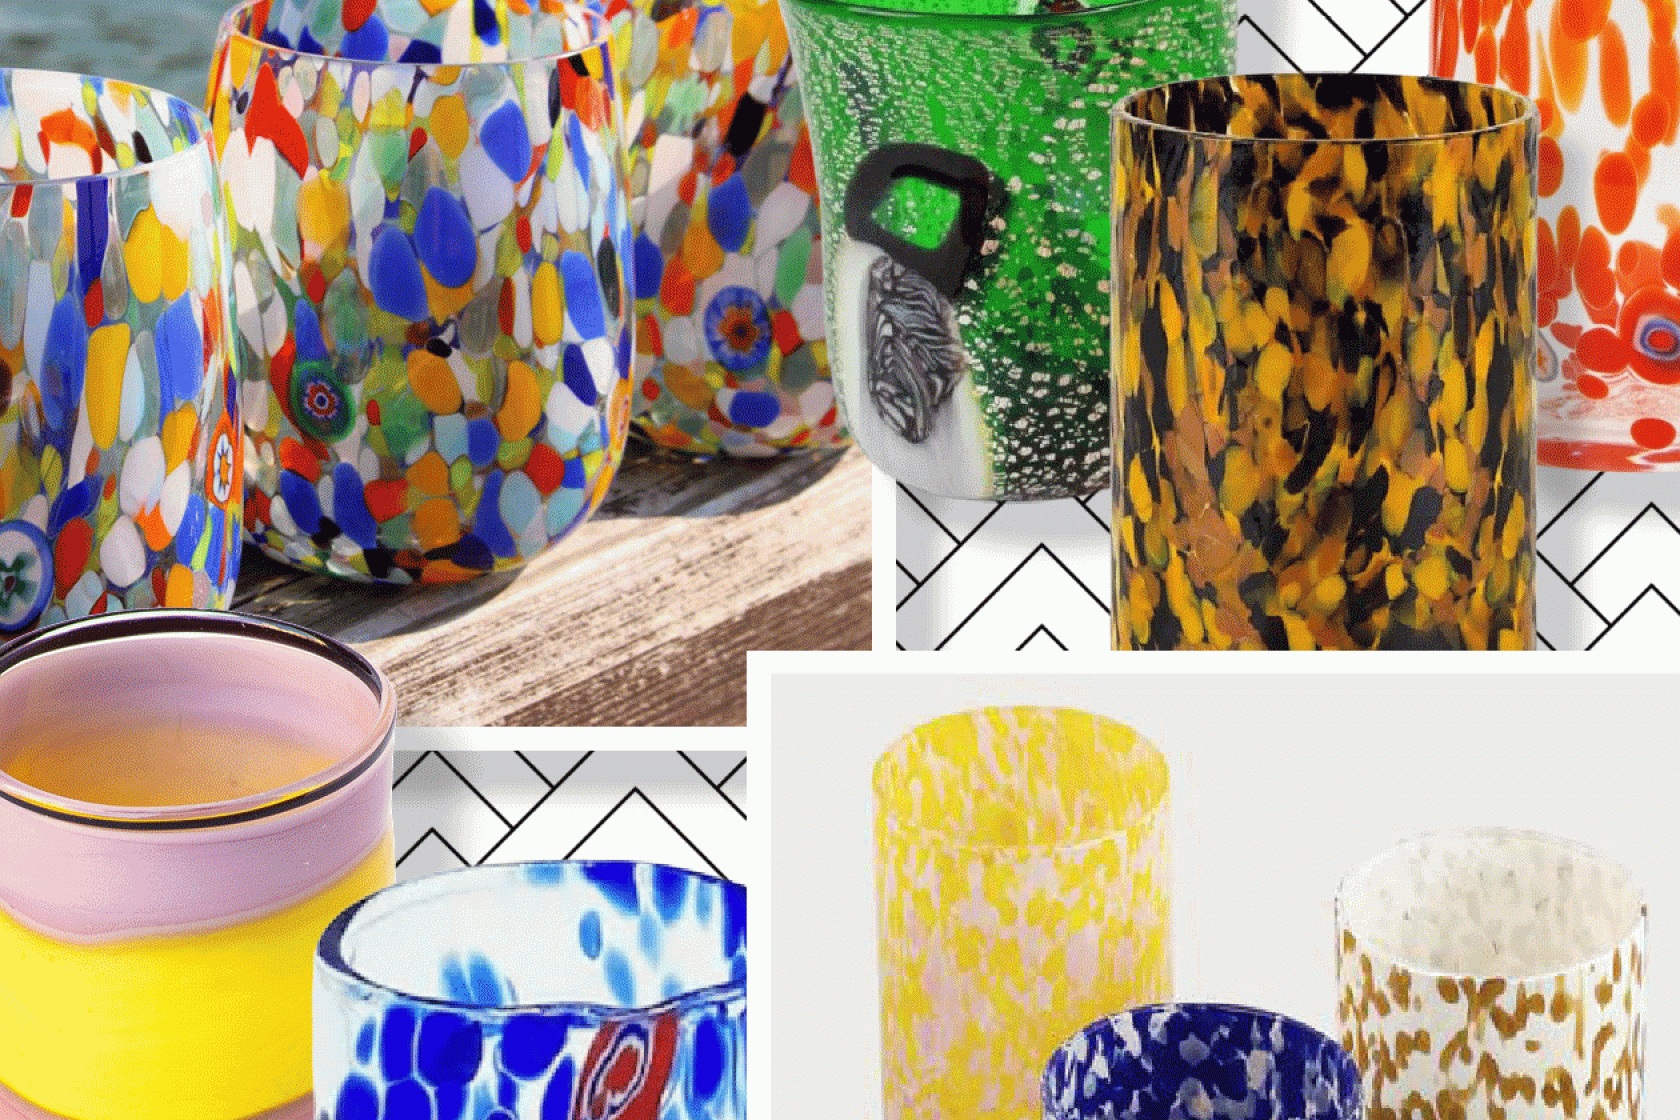 Composit image of Murano glassware